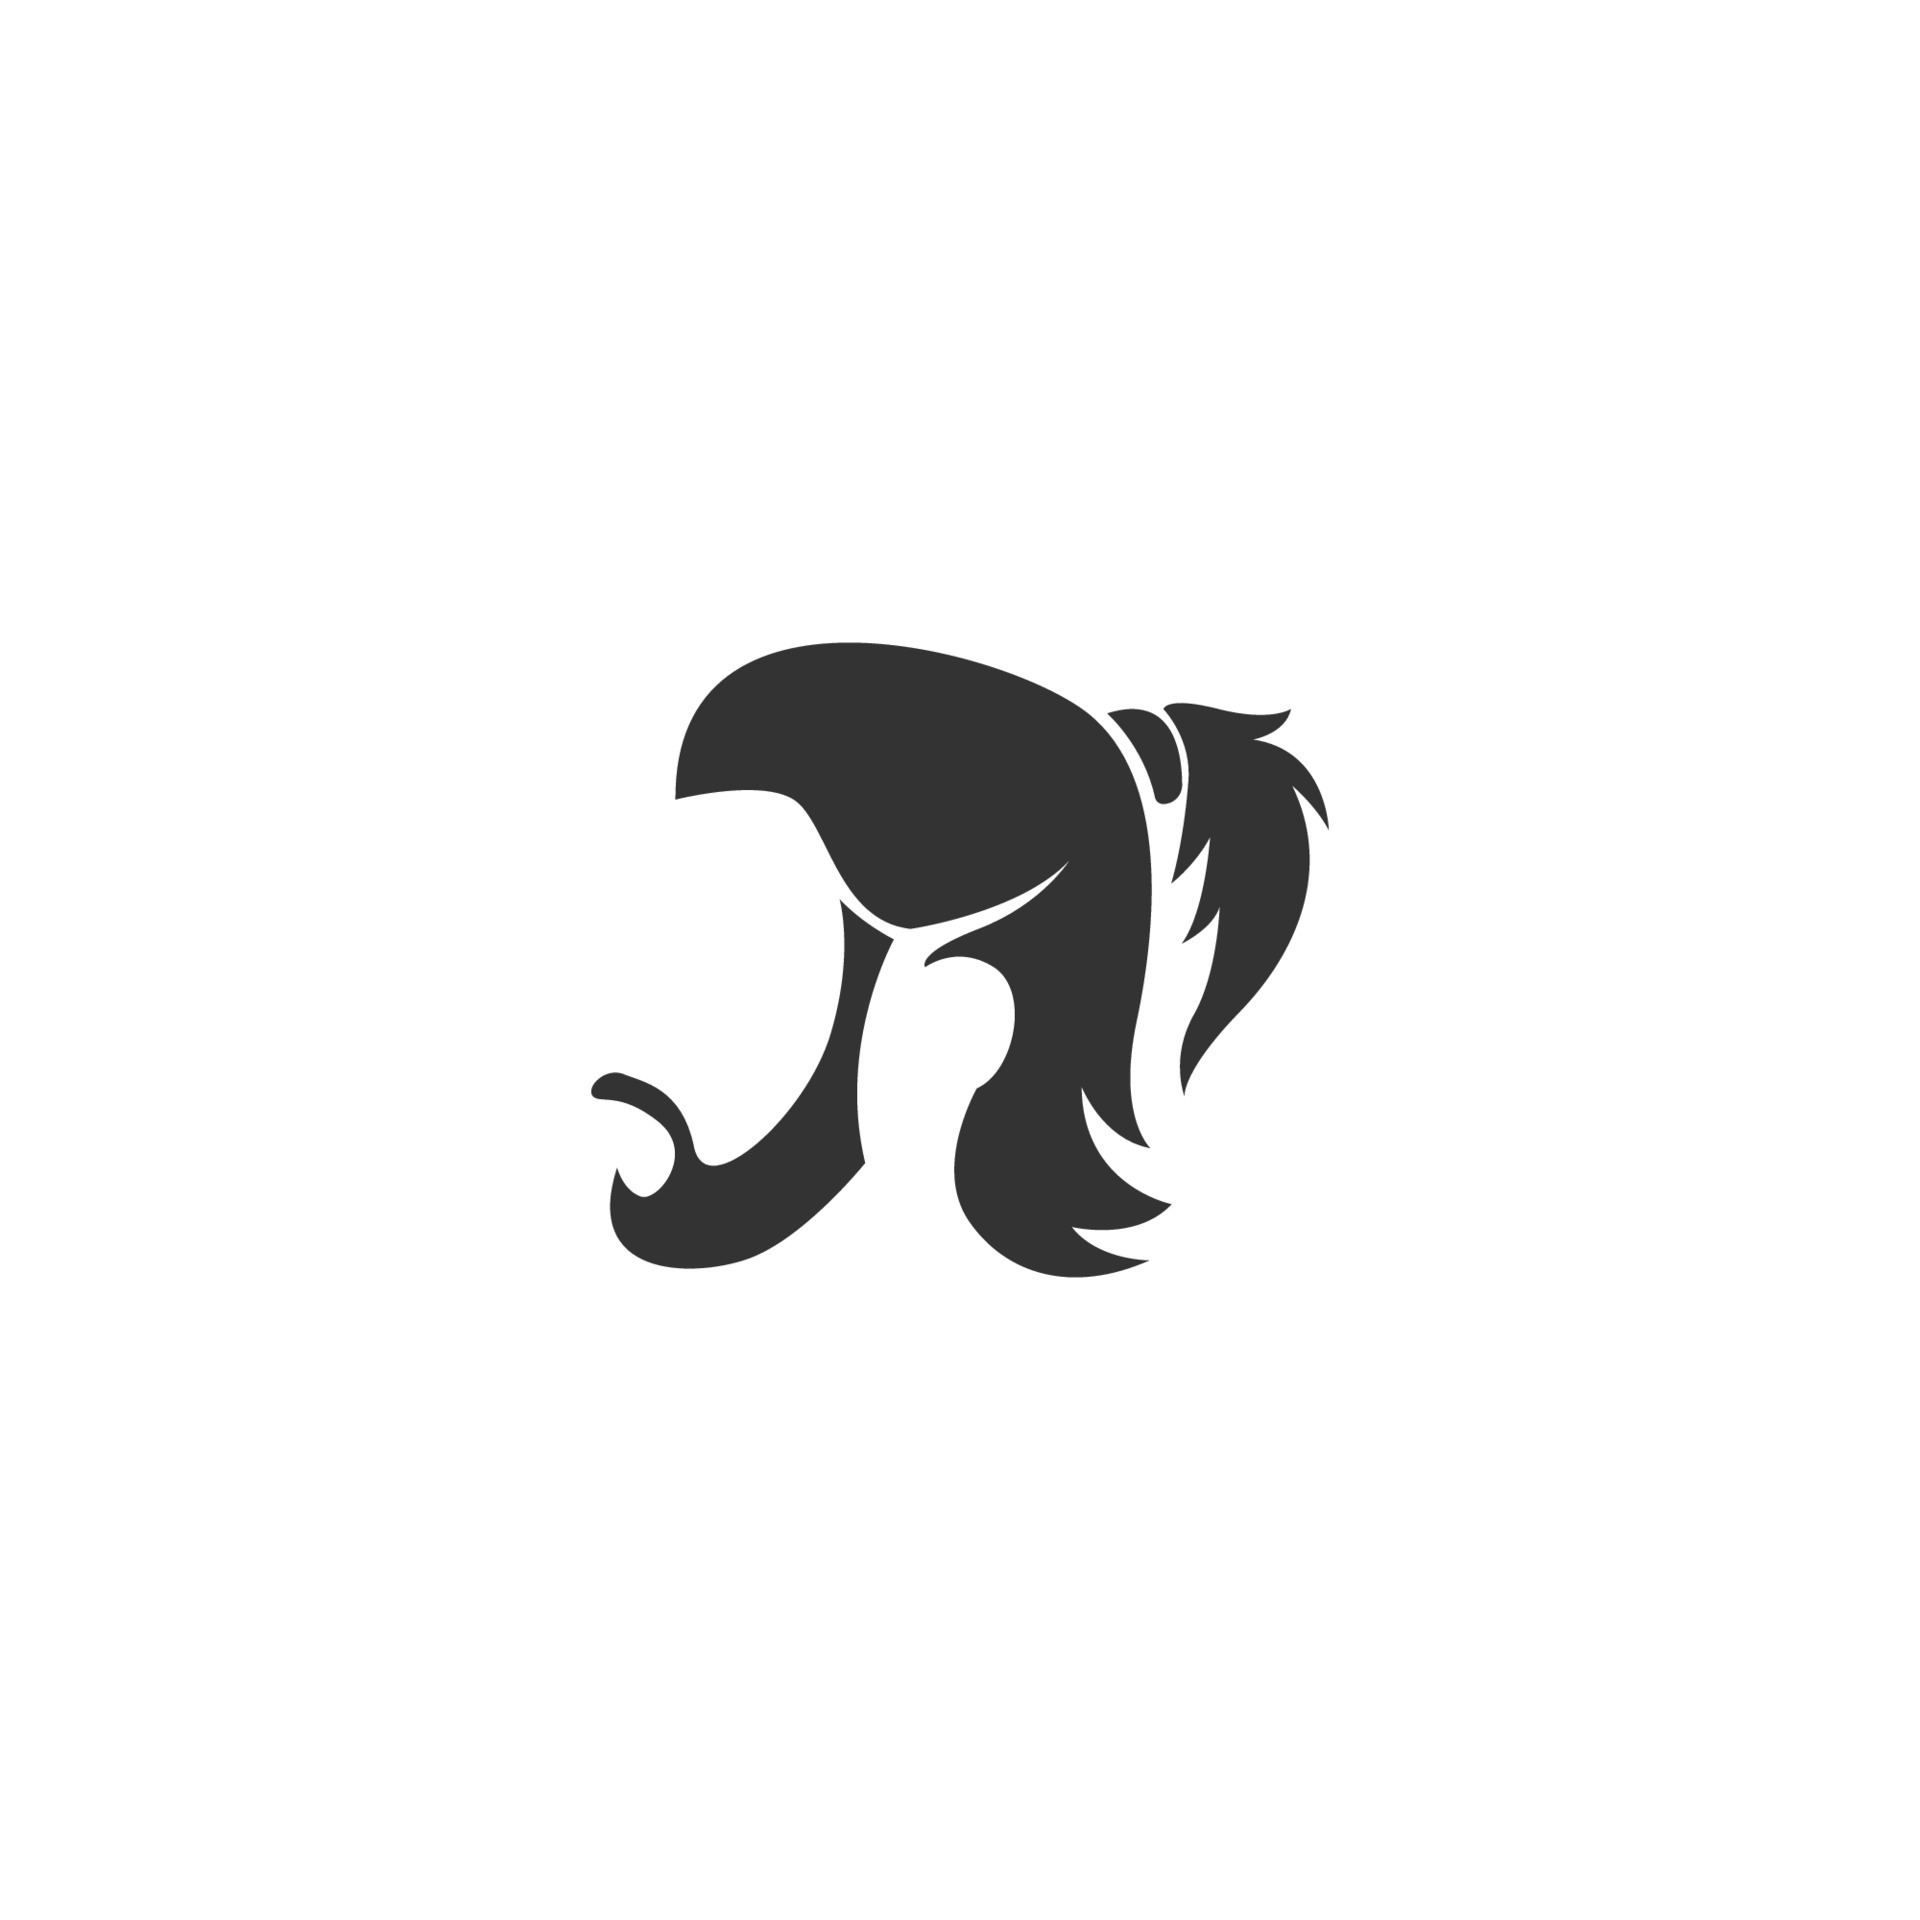 Men hair style icon logo 9790170 Vector Art at Vecteezy